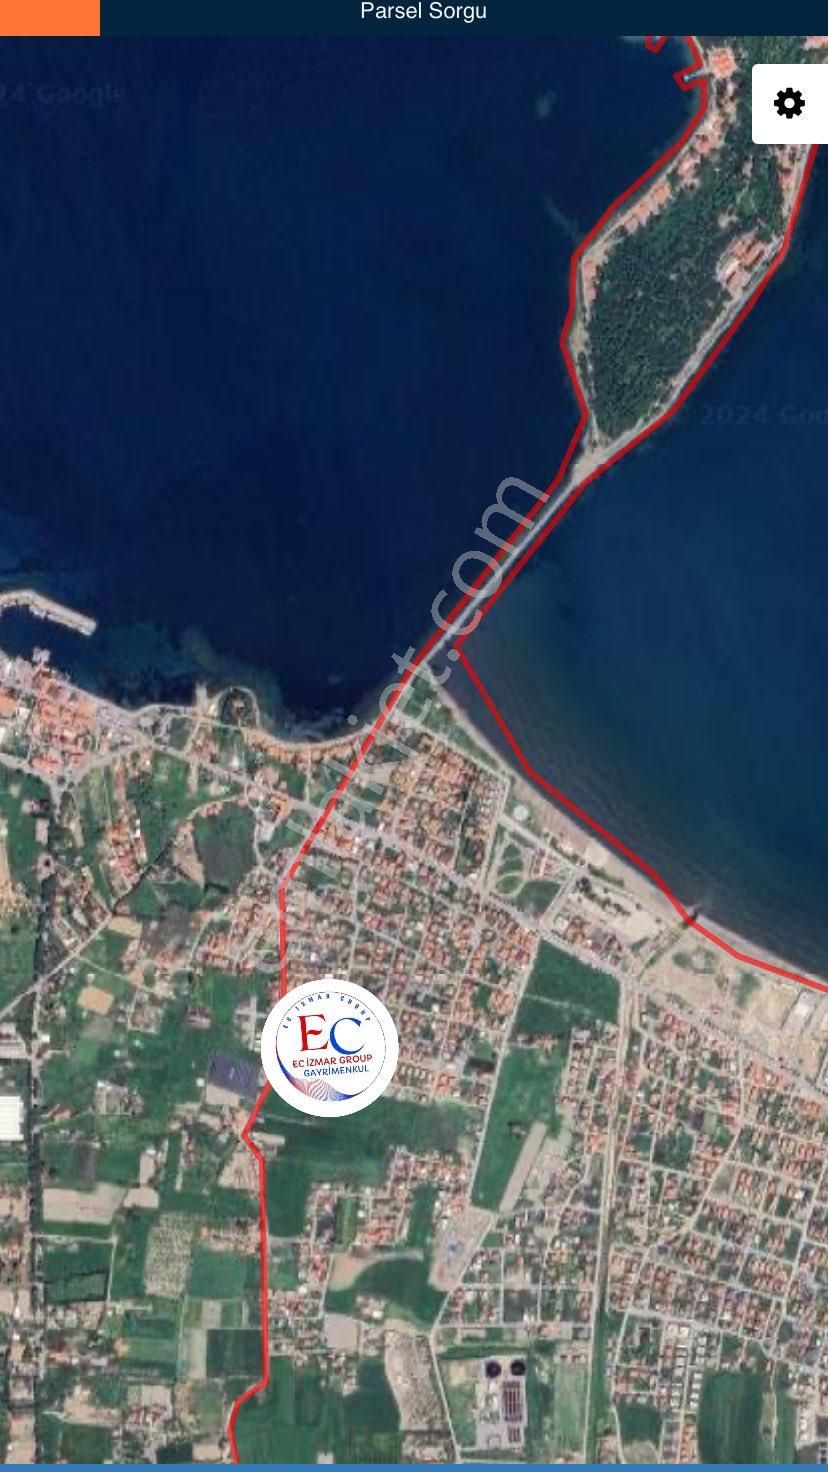 Urla Atatürk Satılık Villa İmarlı Urla iskele Meydanına ve Kum Plajına yakın imarlı arsa